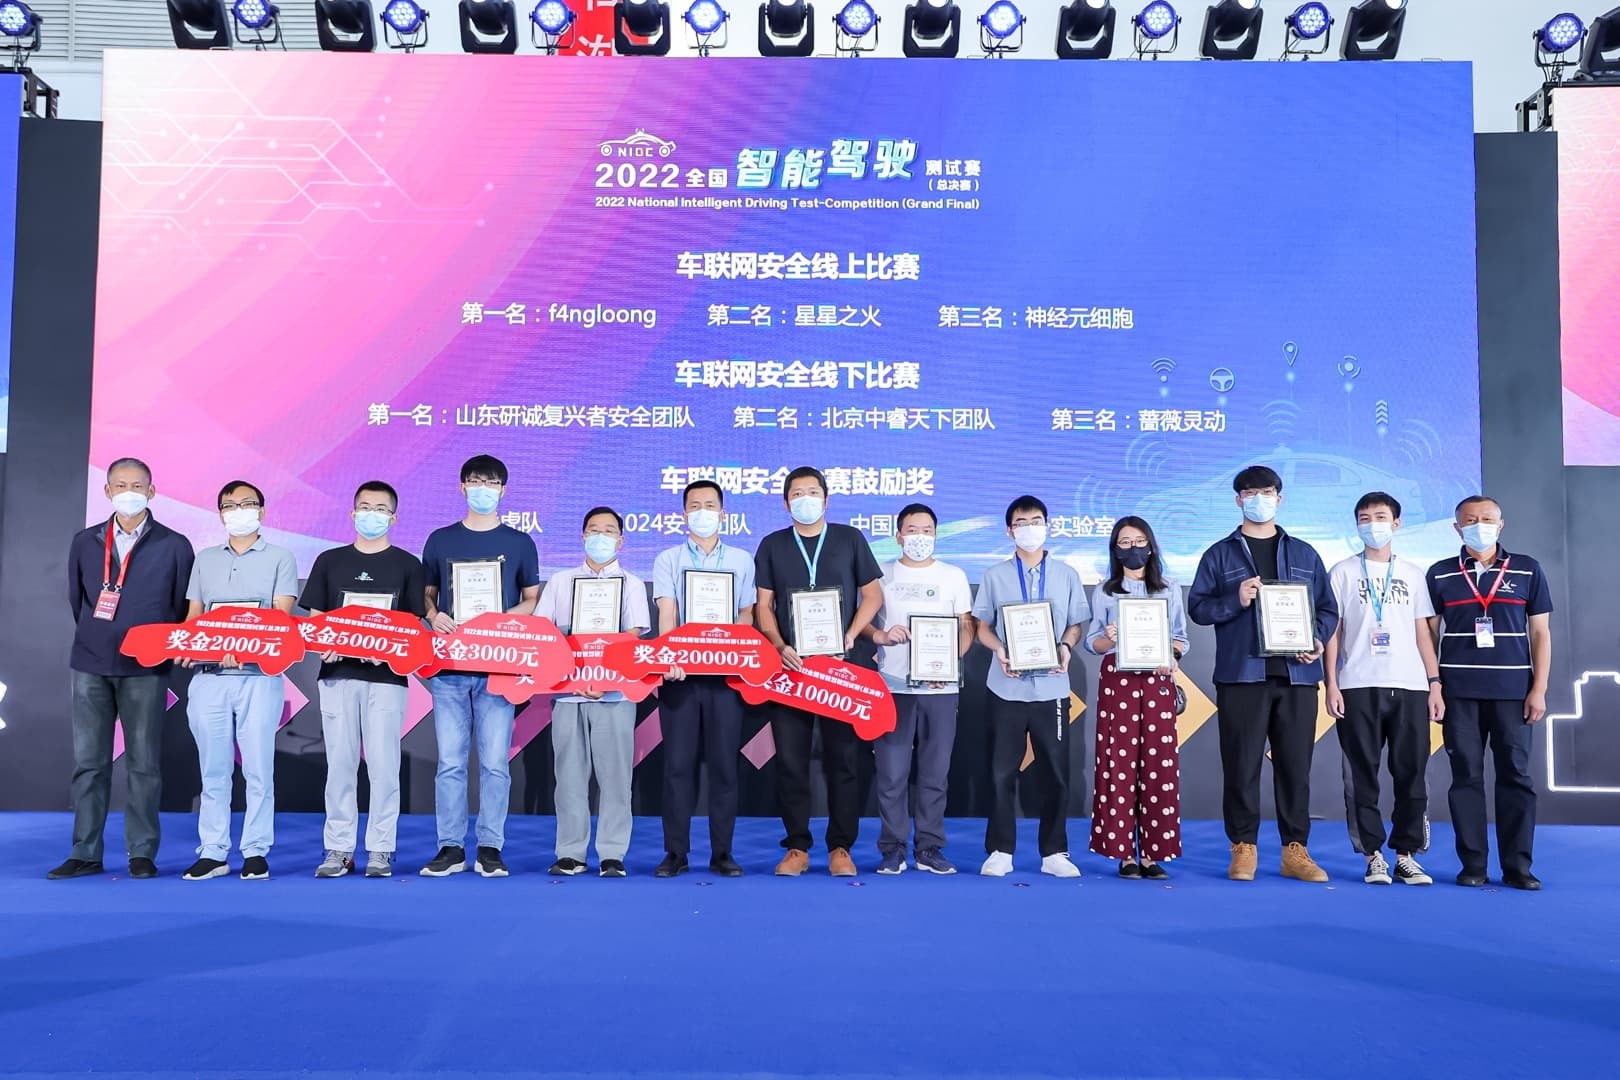 中睿天下获2022全国智能驾驶测试赛车联网安全赛二等奖